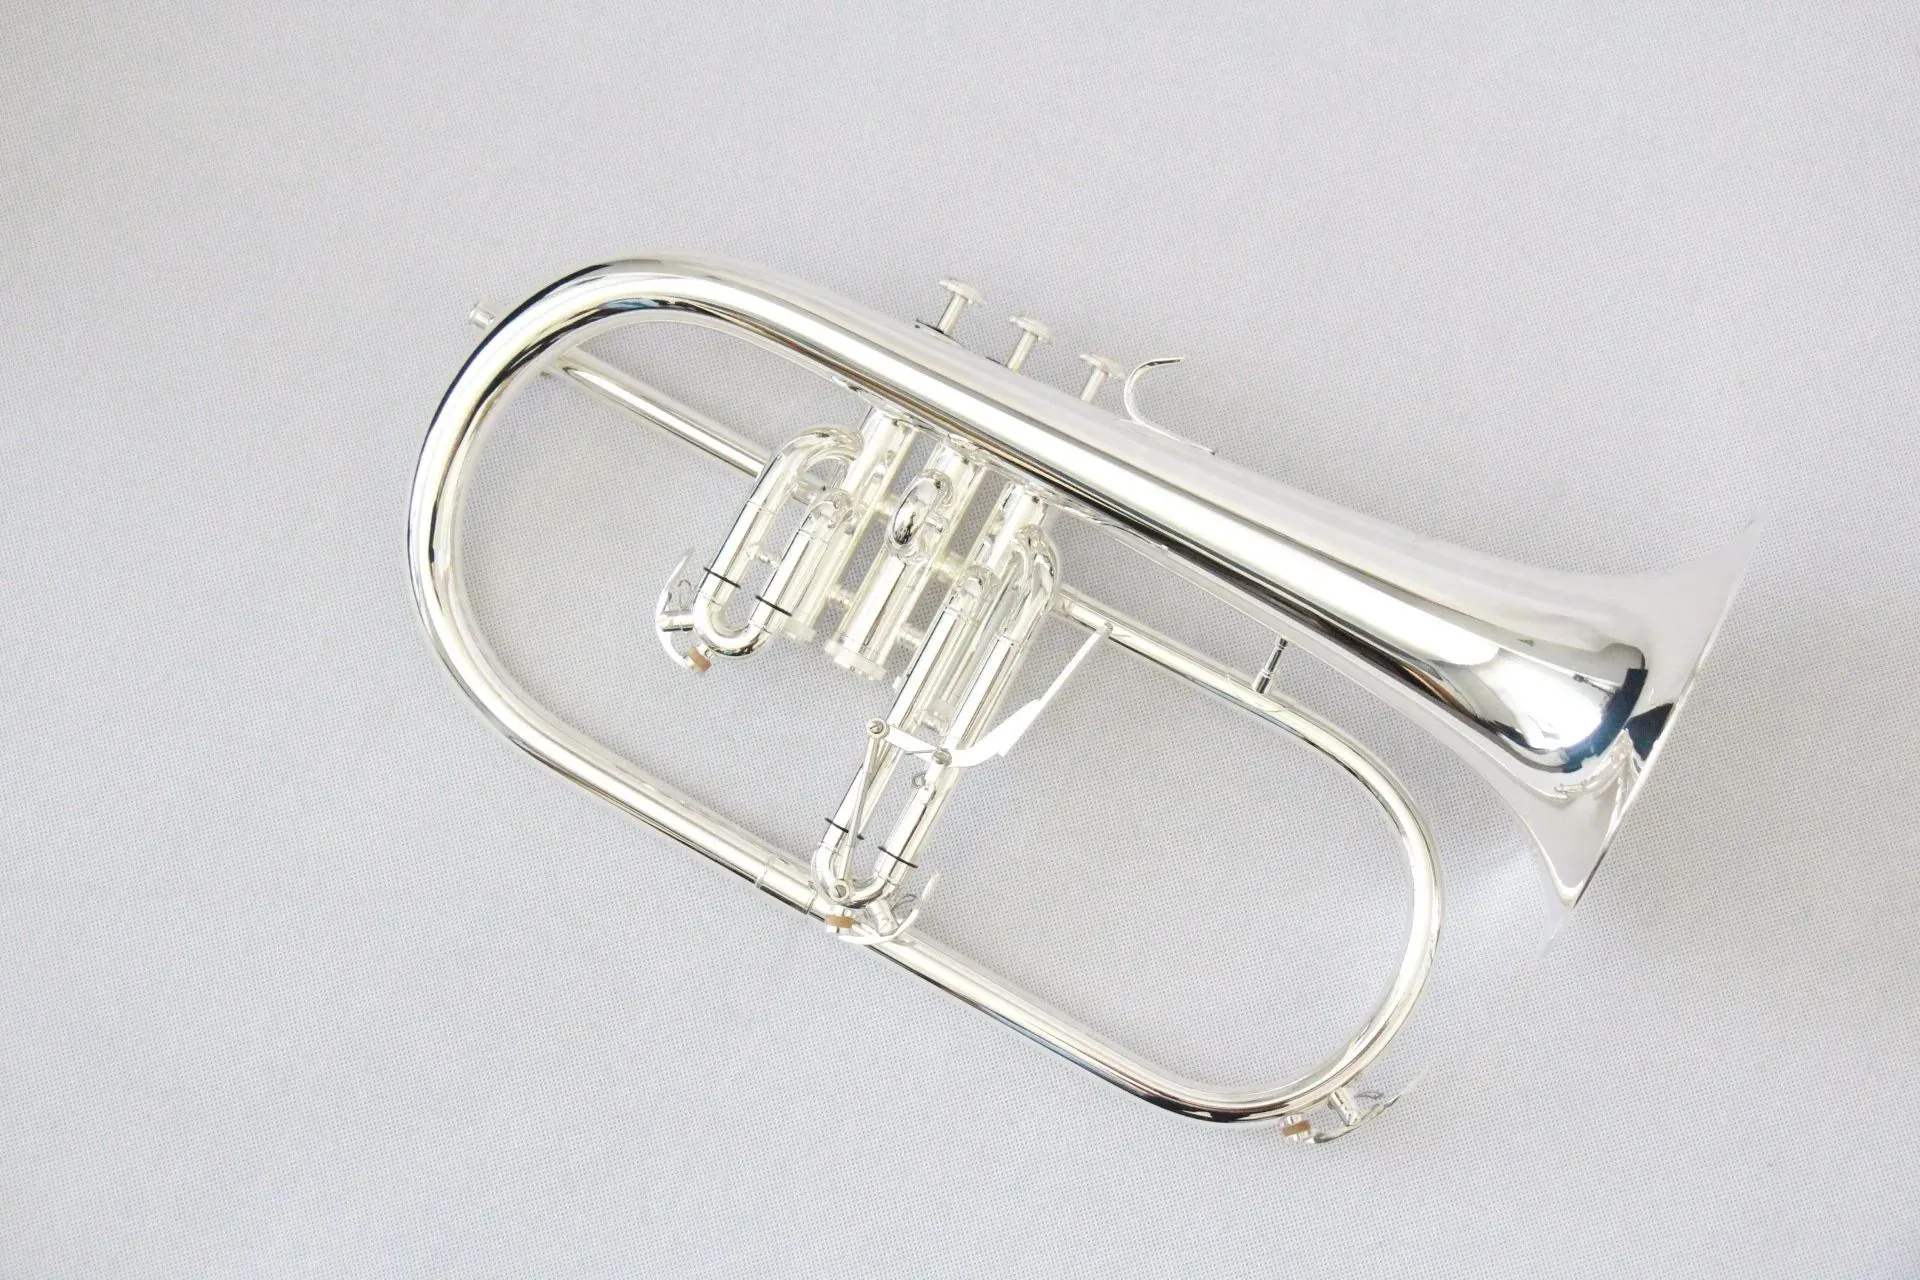 Chinesisches Flügelhorn. Gute Qualität, günstiges Flügelhorn, professionelles versilbertes Musikinstrument/Flügelhorn